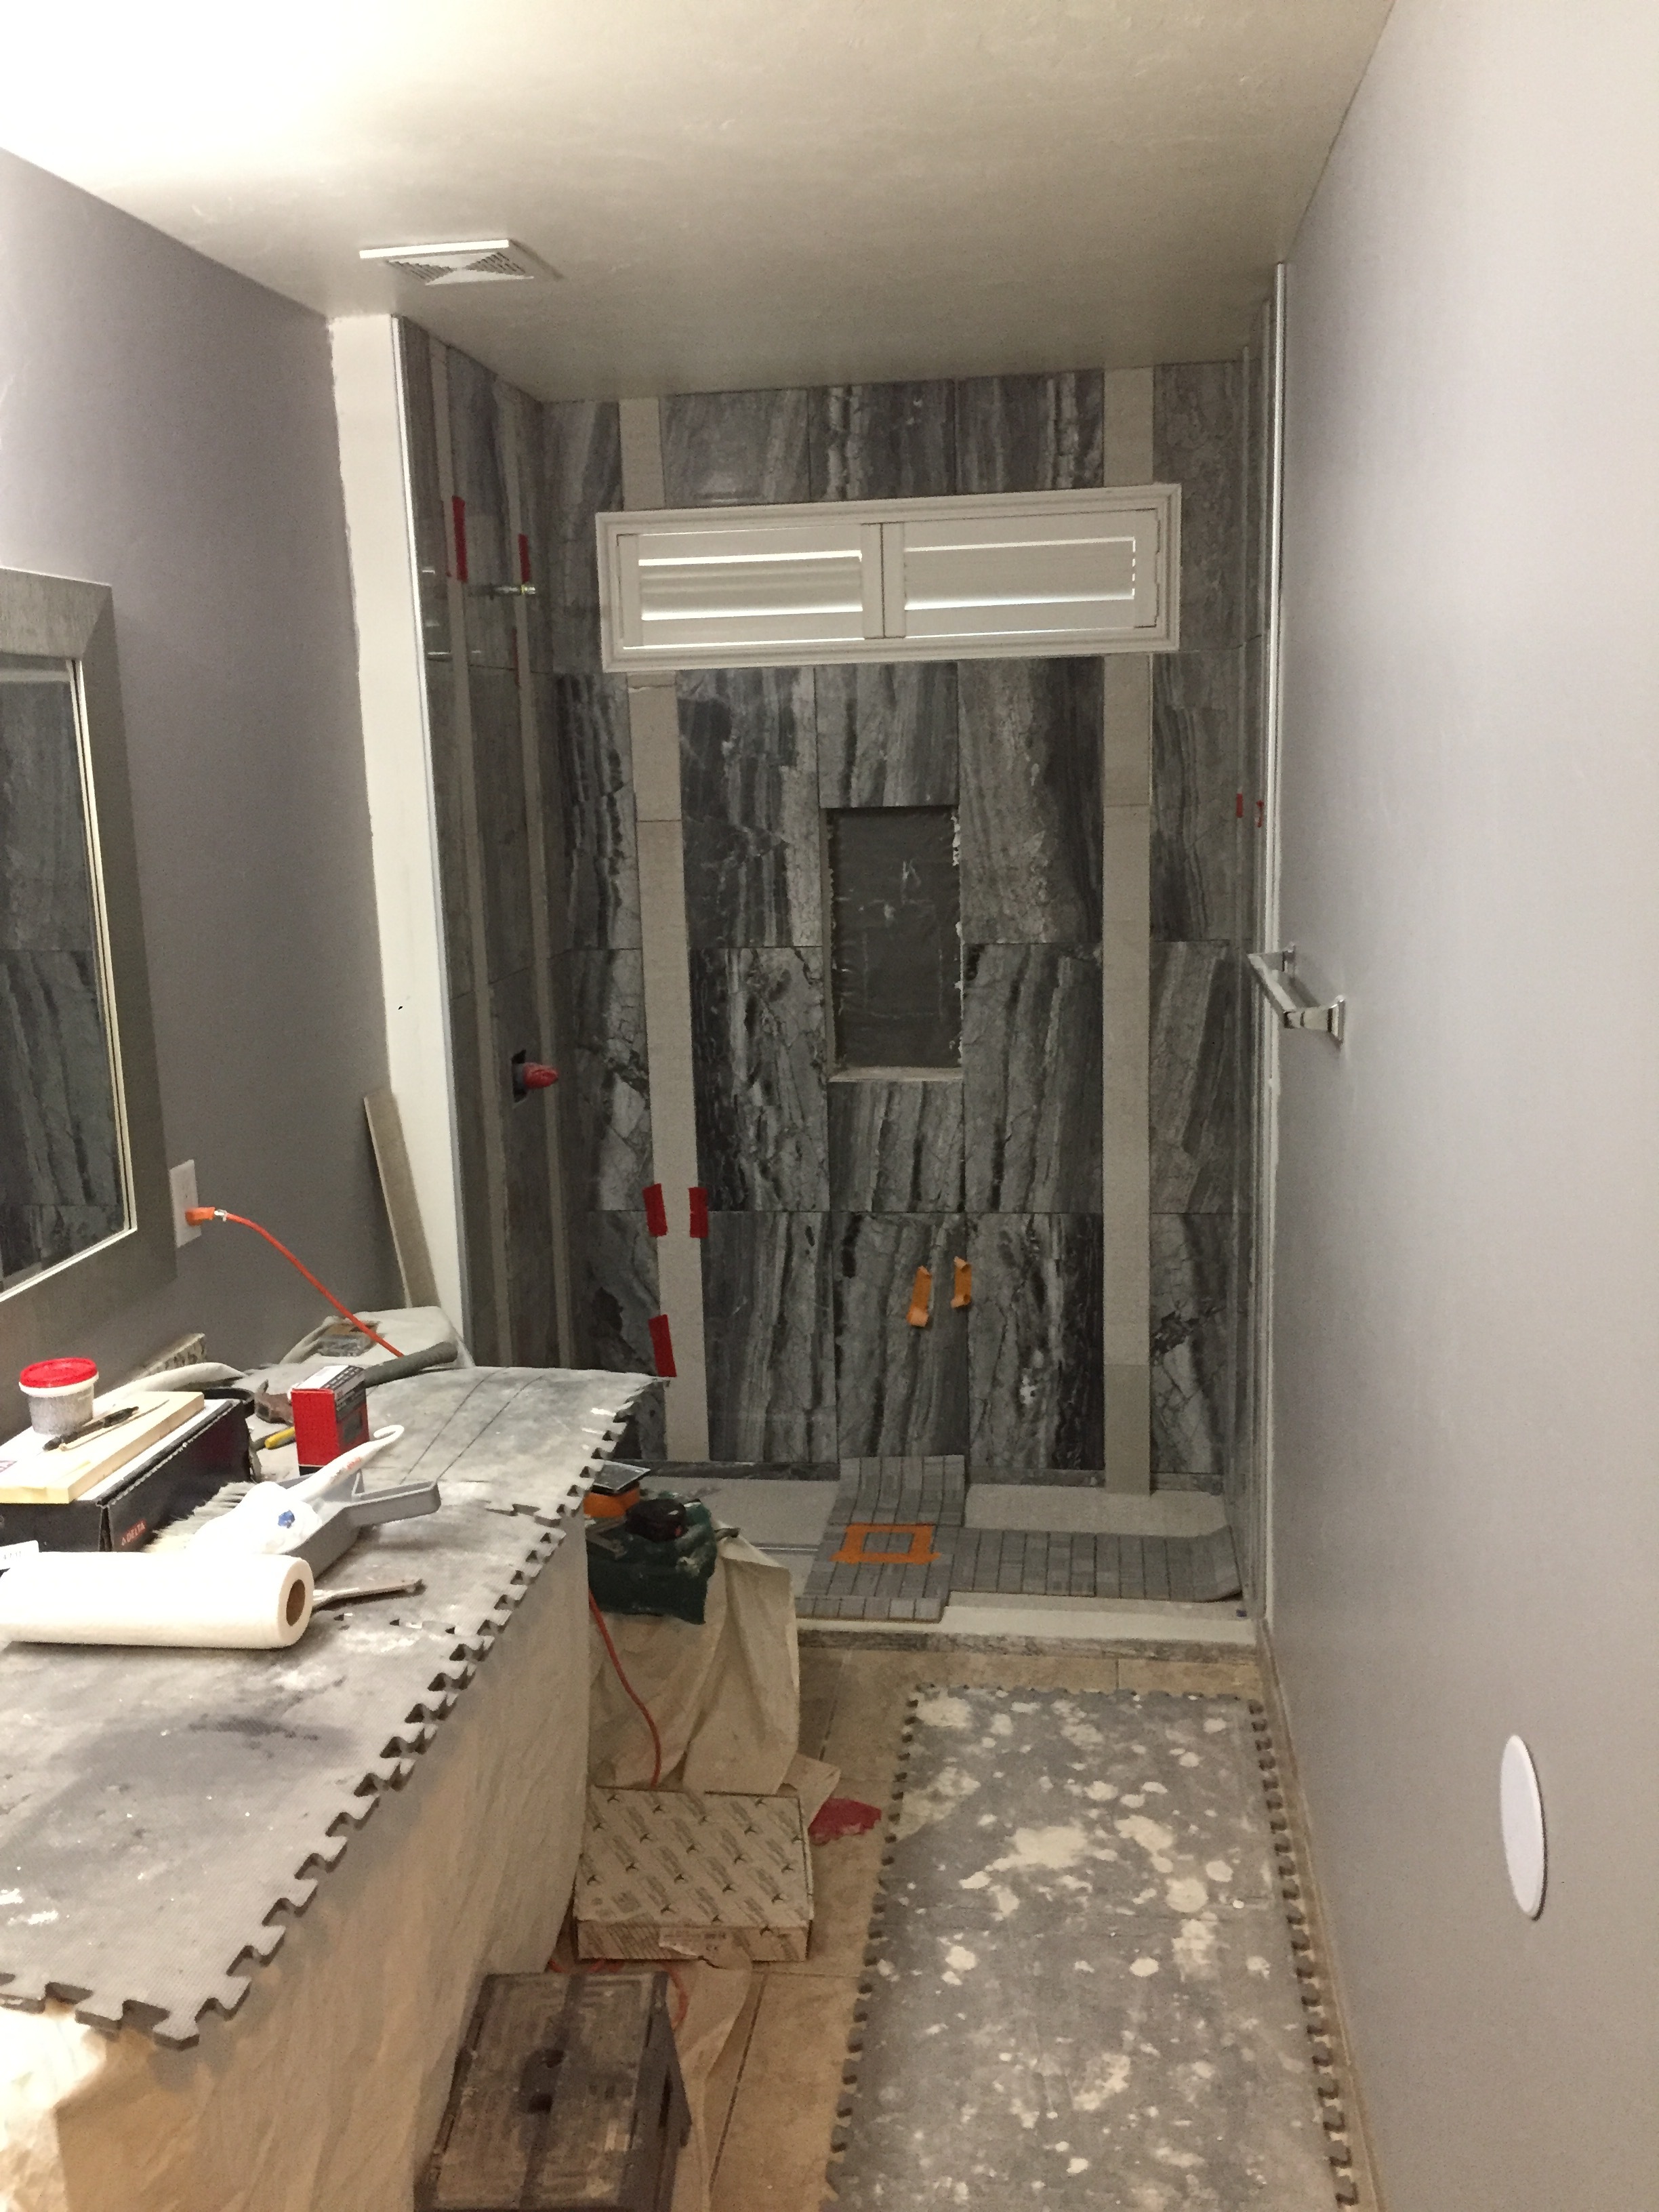 Bathroom Tile Shower Remodel M10 copy.JPG